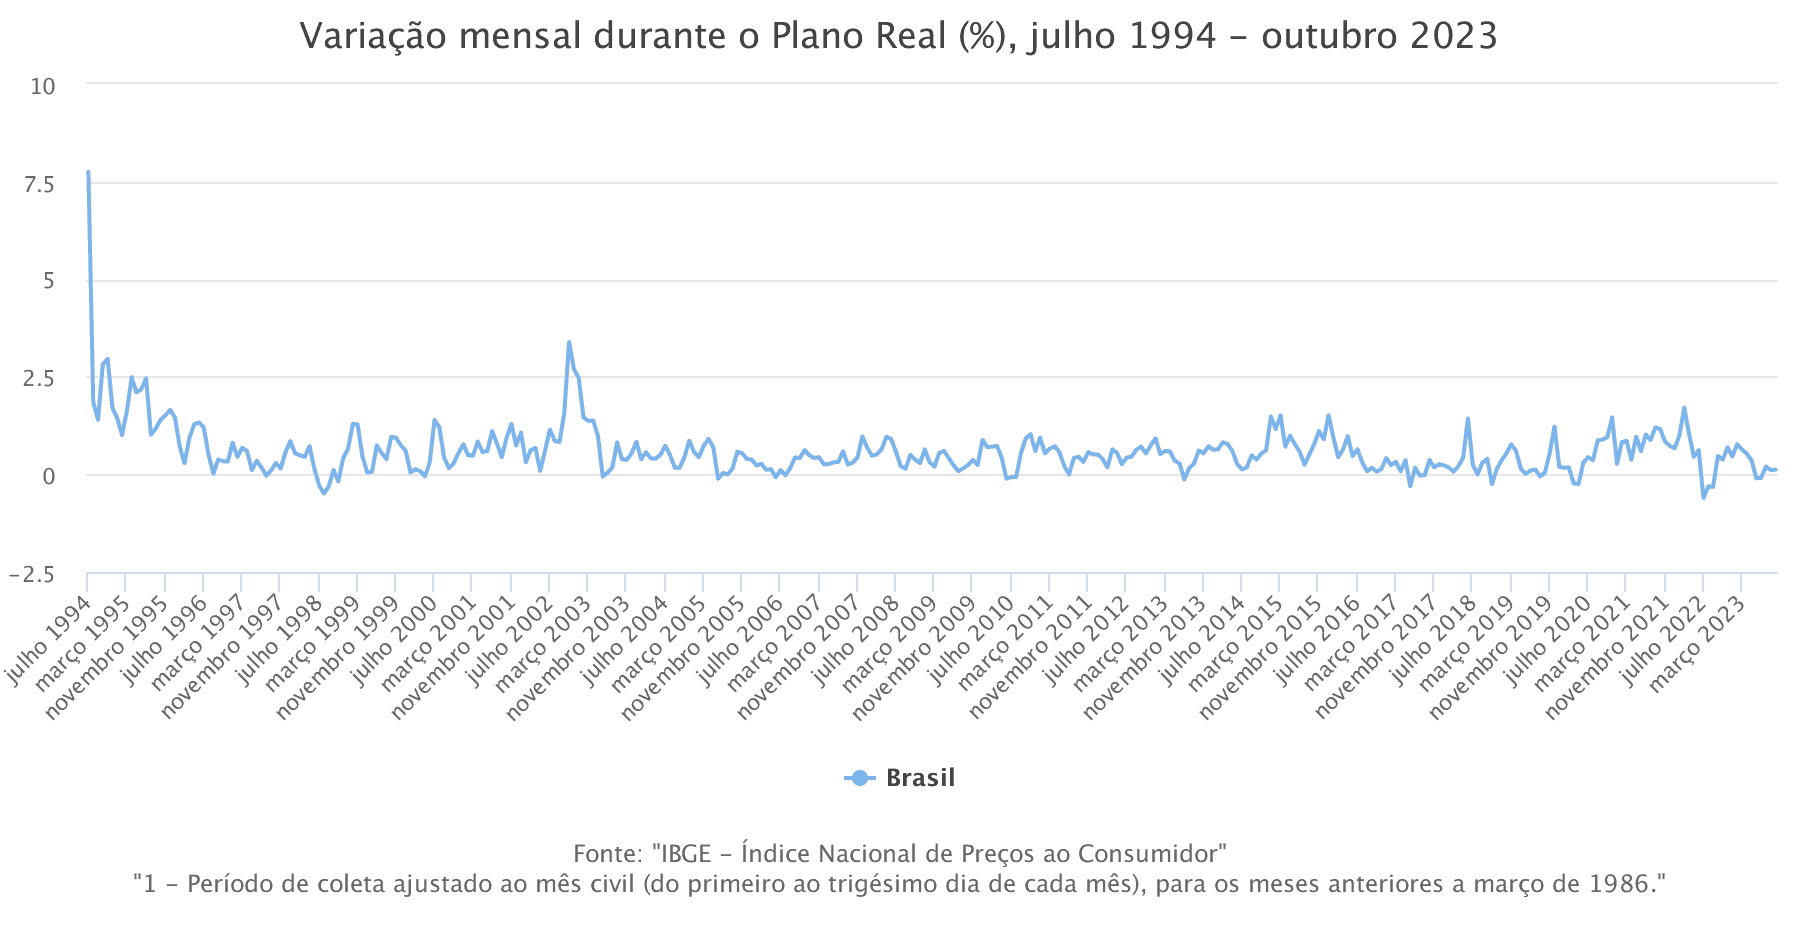 variacao-mensal-durante-o-plano-real-julho-1994-outubro-2023